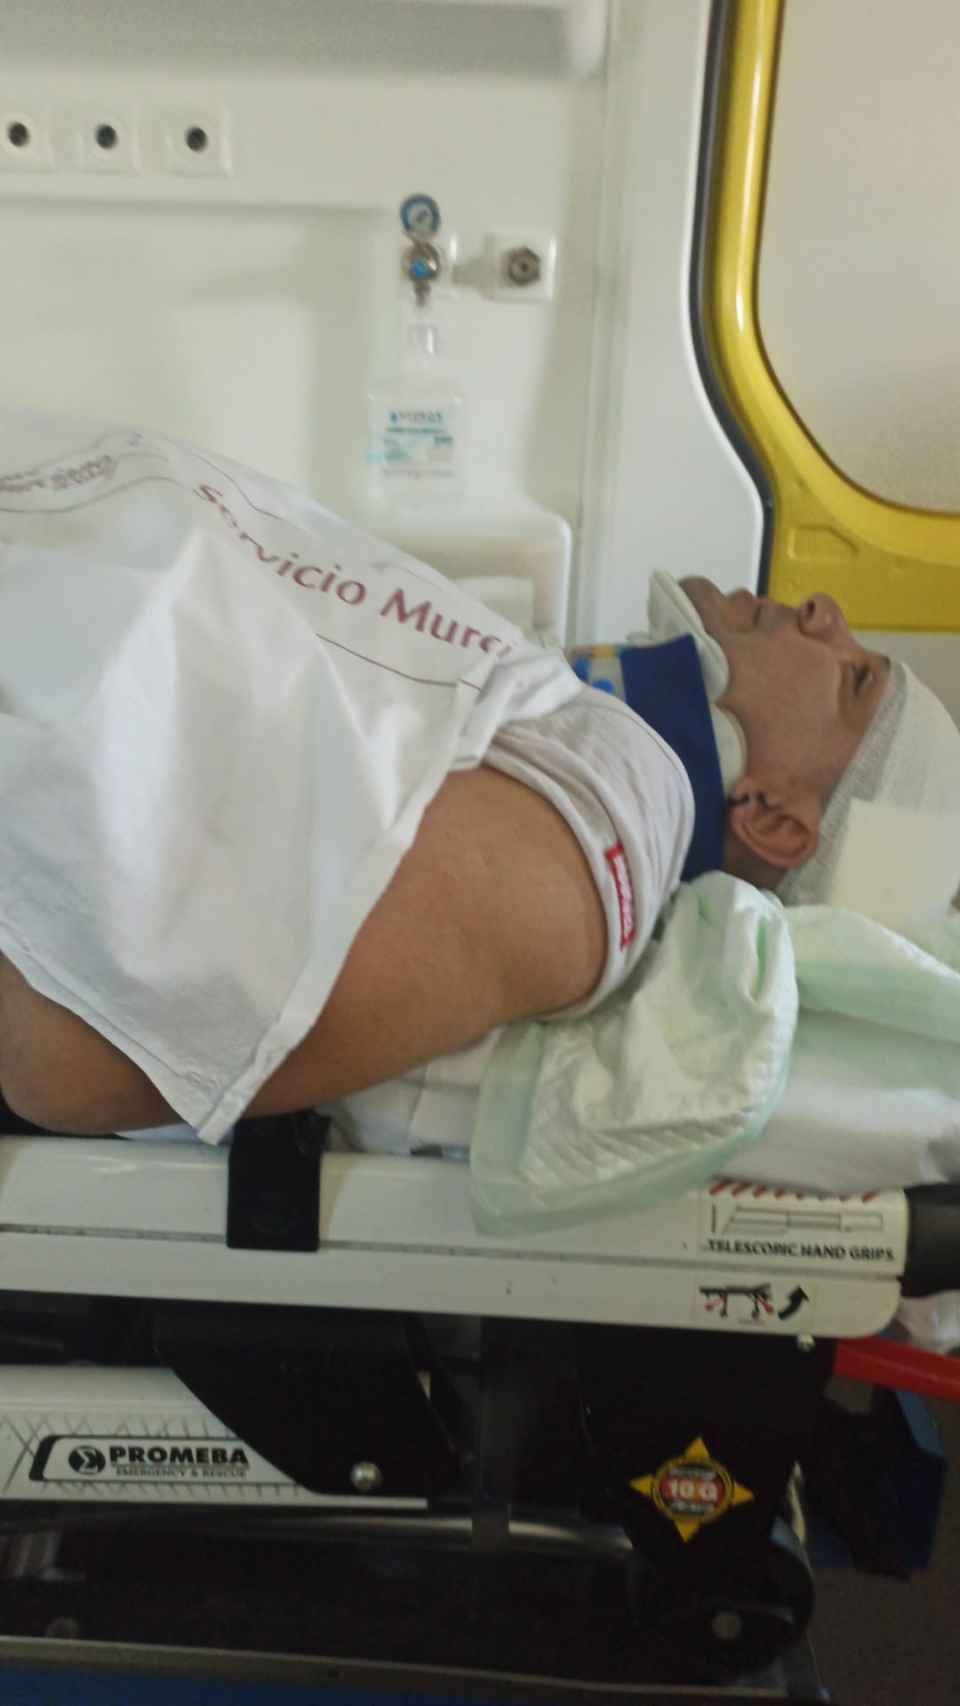 Germán, en la ambulancia, en una foto tomada por su pareja, Beatriz, antes de ser trasladado de urgencia al Hospital Morales Meseguer de Murcia.